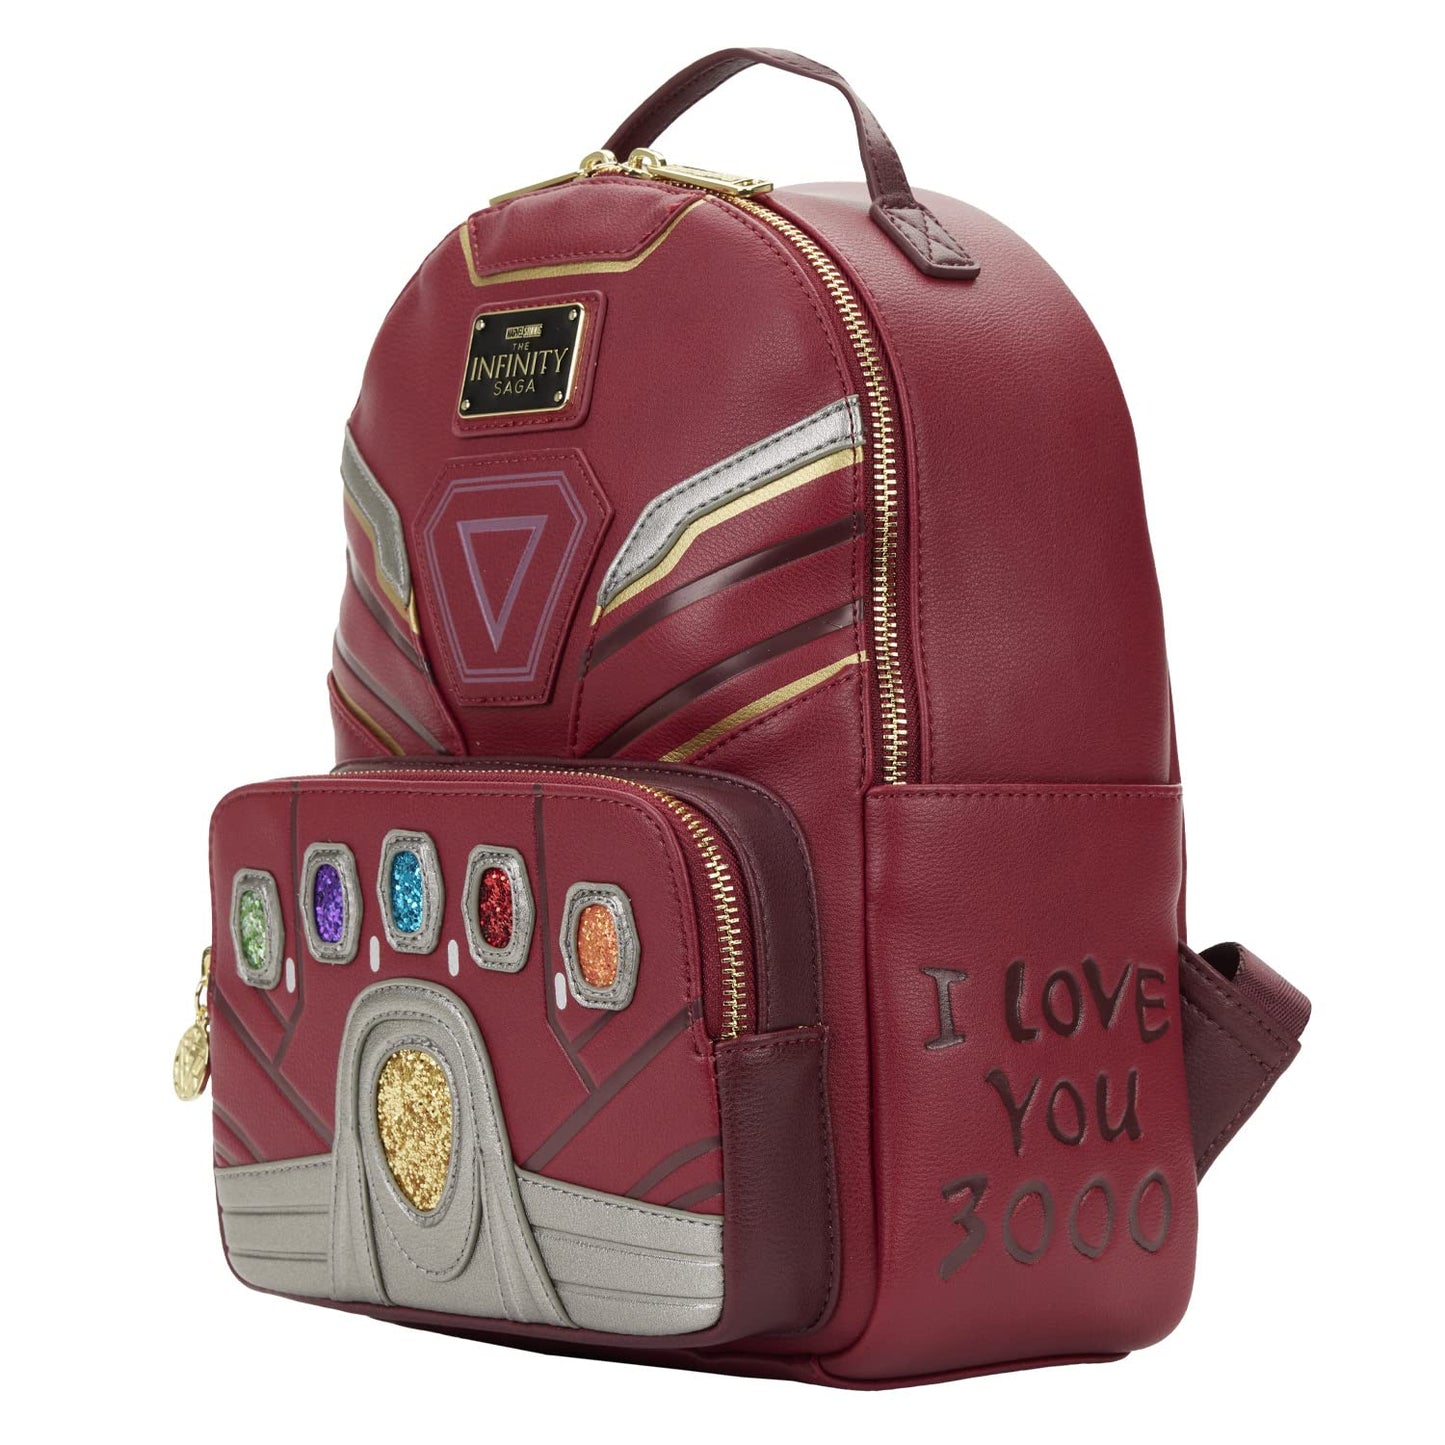 Loungefly Marvel Avengers Iron Gauntlet Infinity Saga Hero Mini Backpack